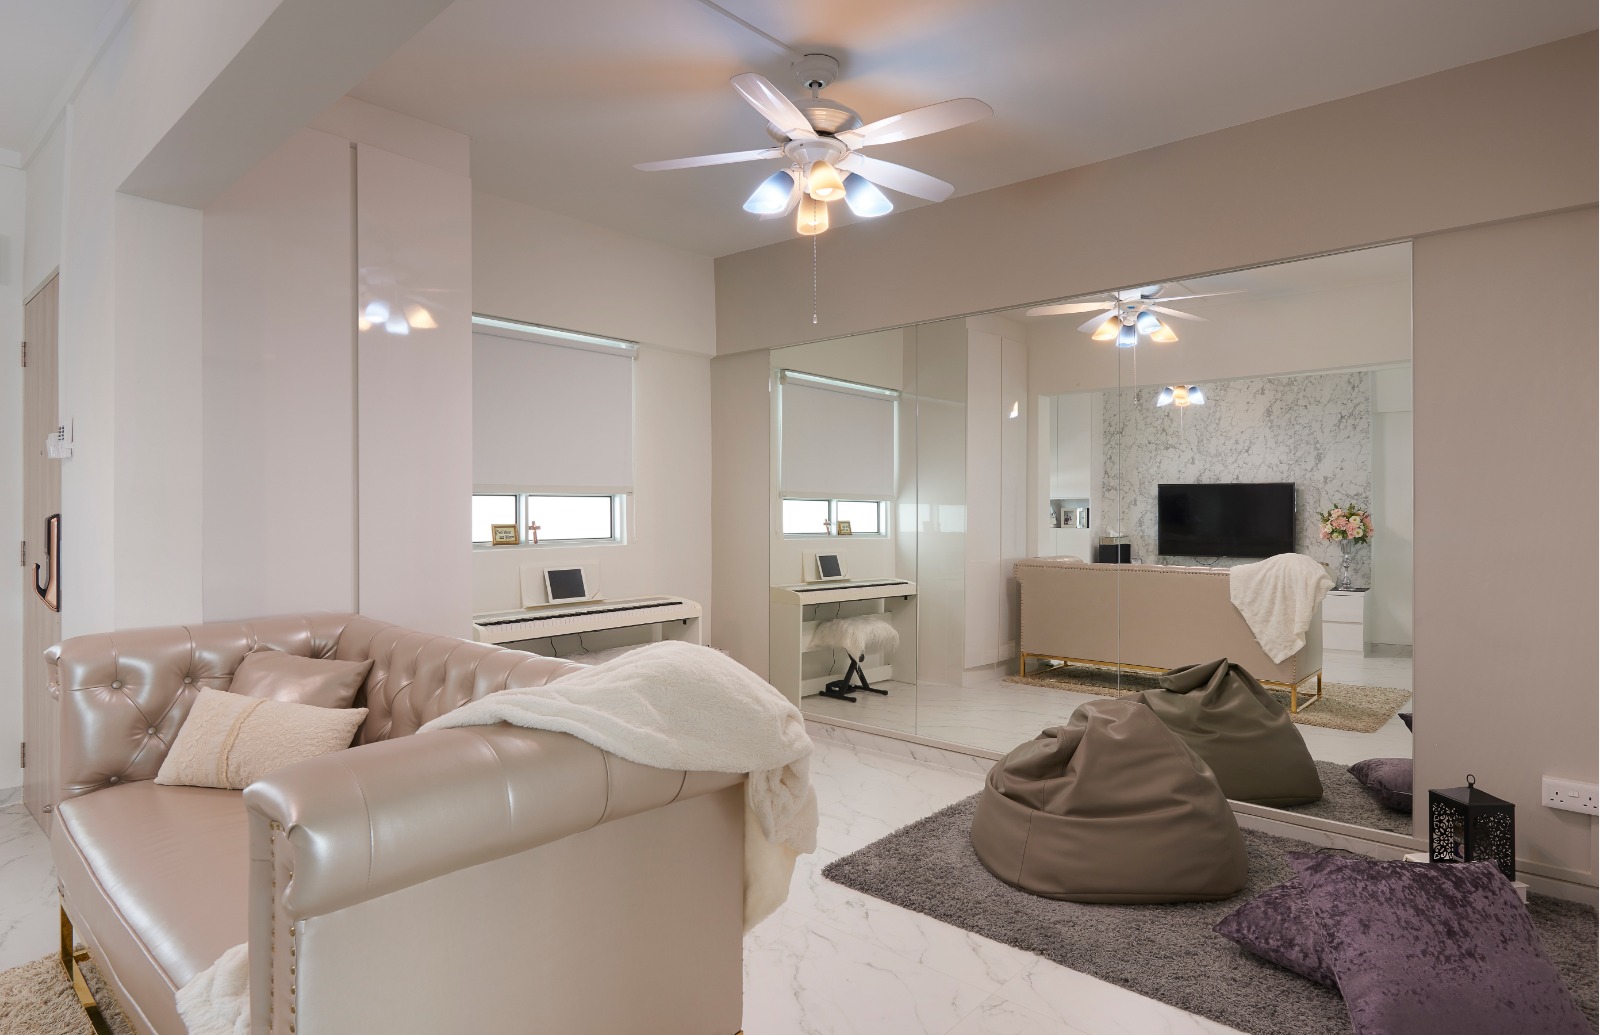 Modern Design - Living Room - HDB 3 Room - Design by DC Vision Design Pte Ltd